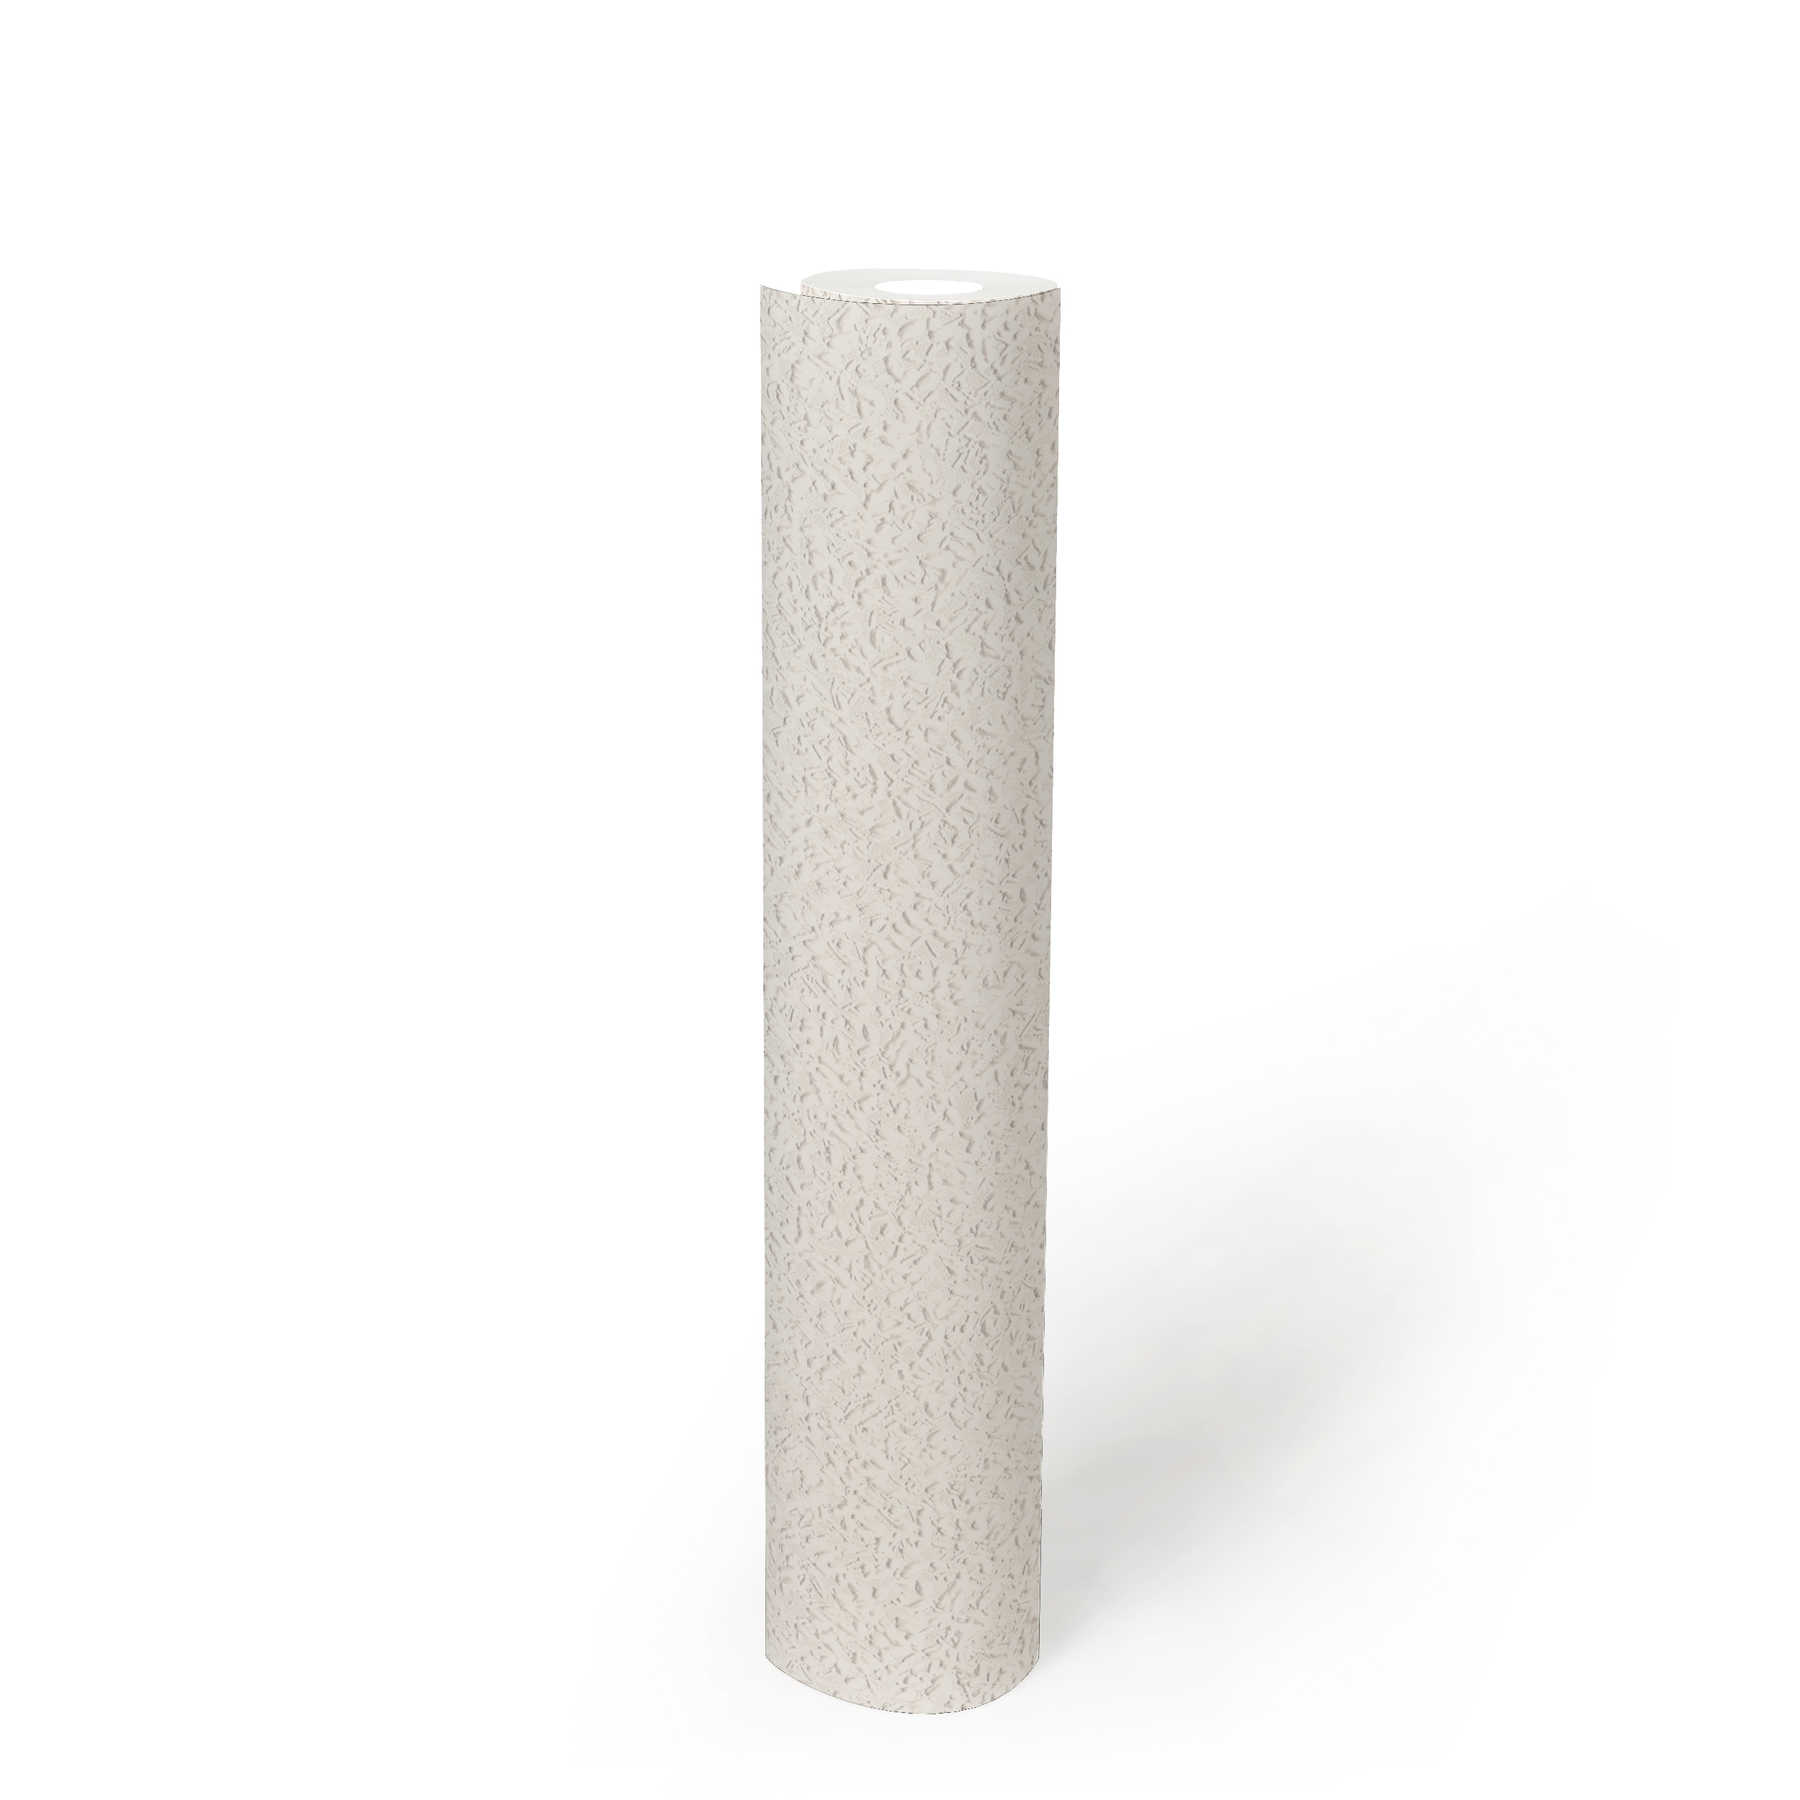             Papierbehang houtsnipperlook in wit met structuurpatroon
        